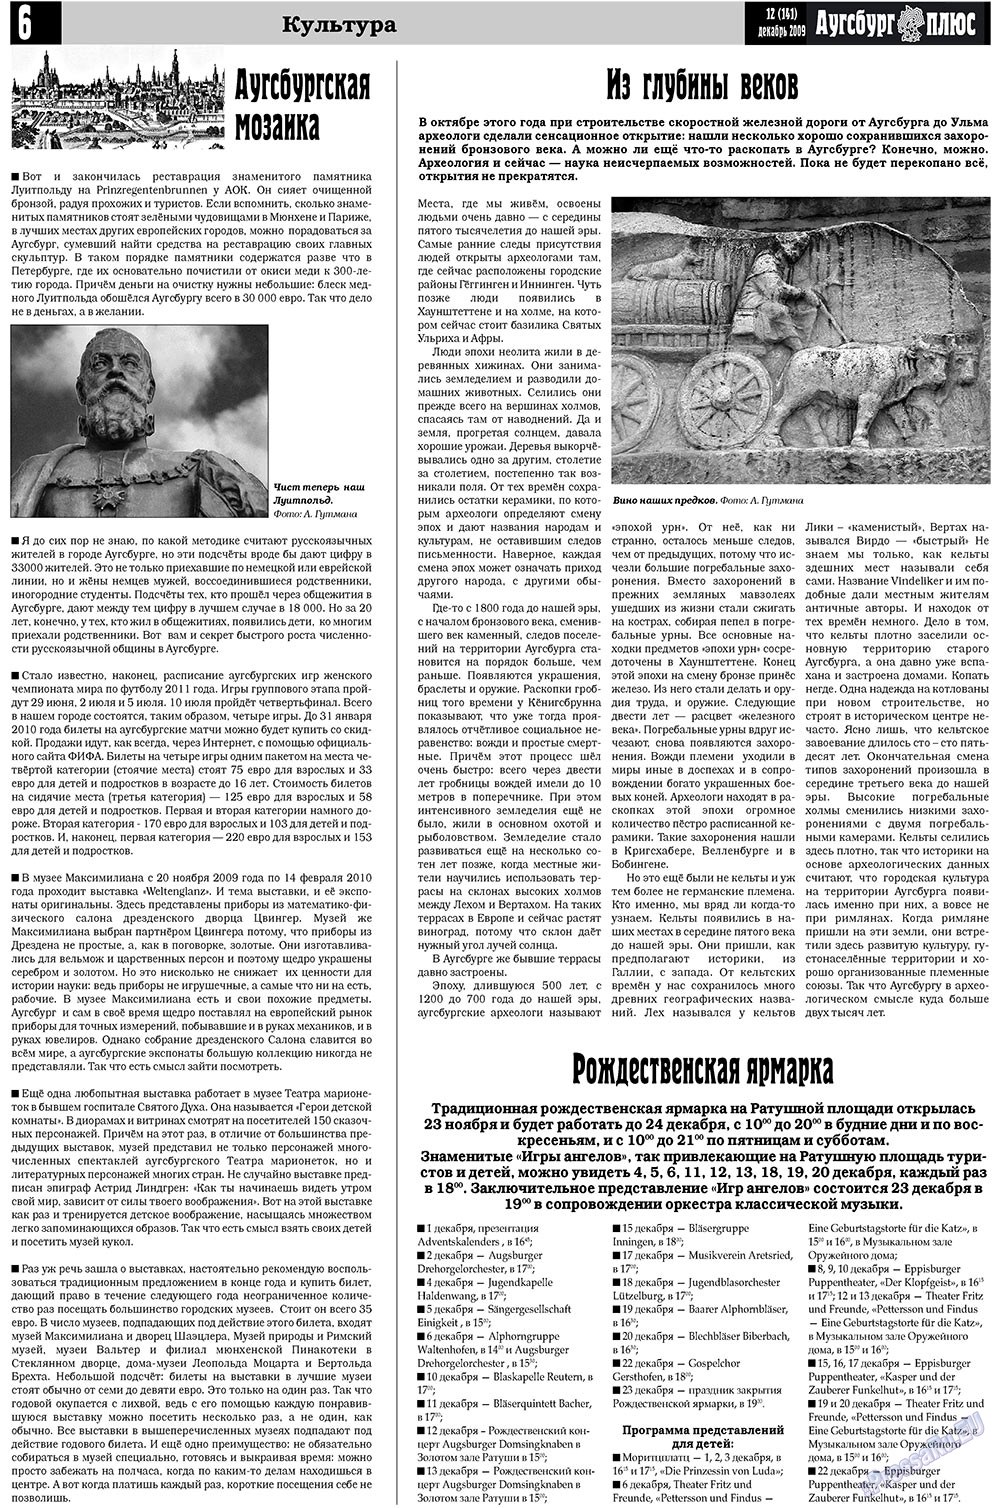 Германия плюс, газета. 2009 №12 стр.22